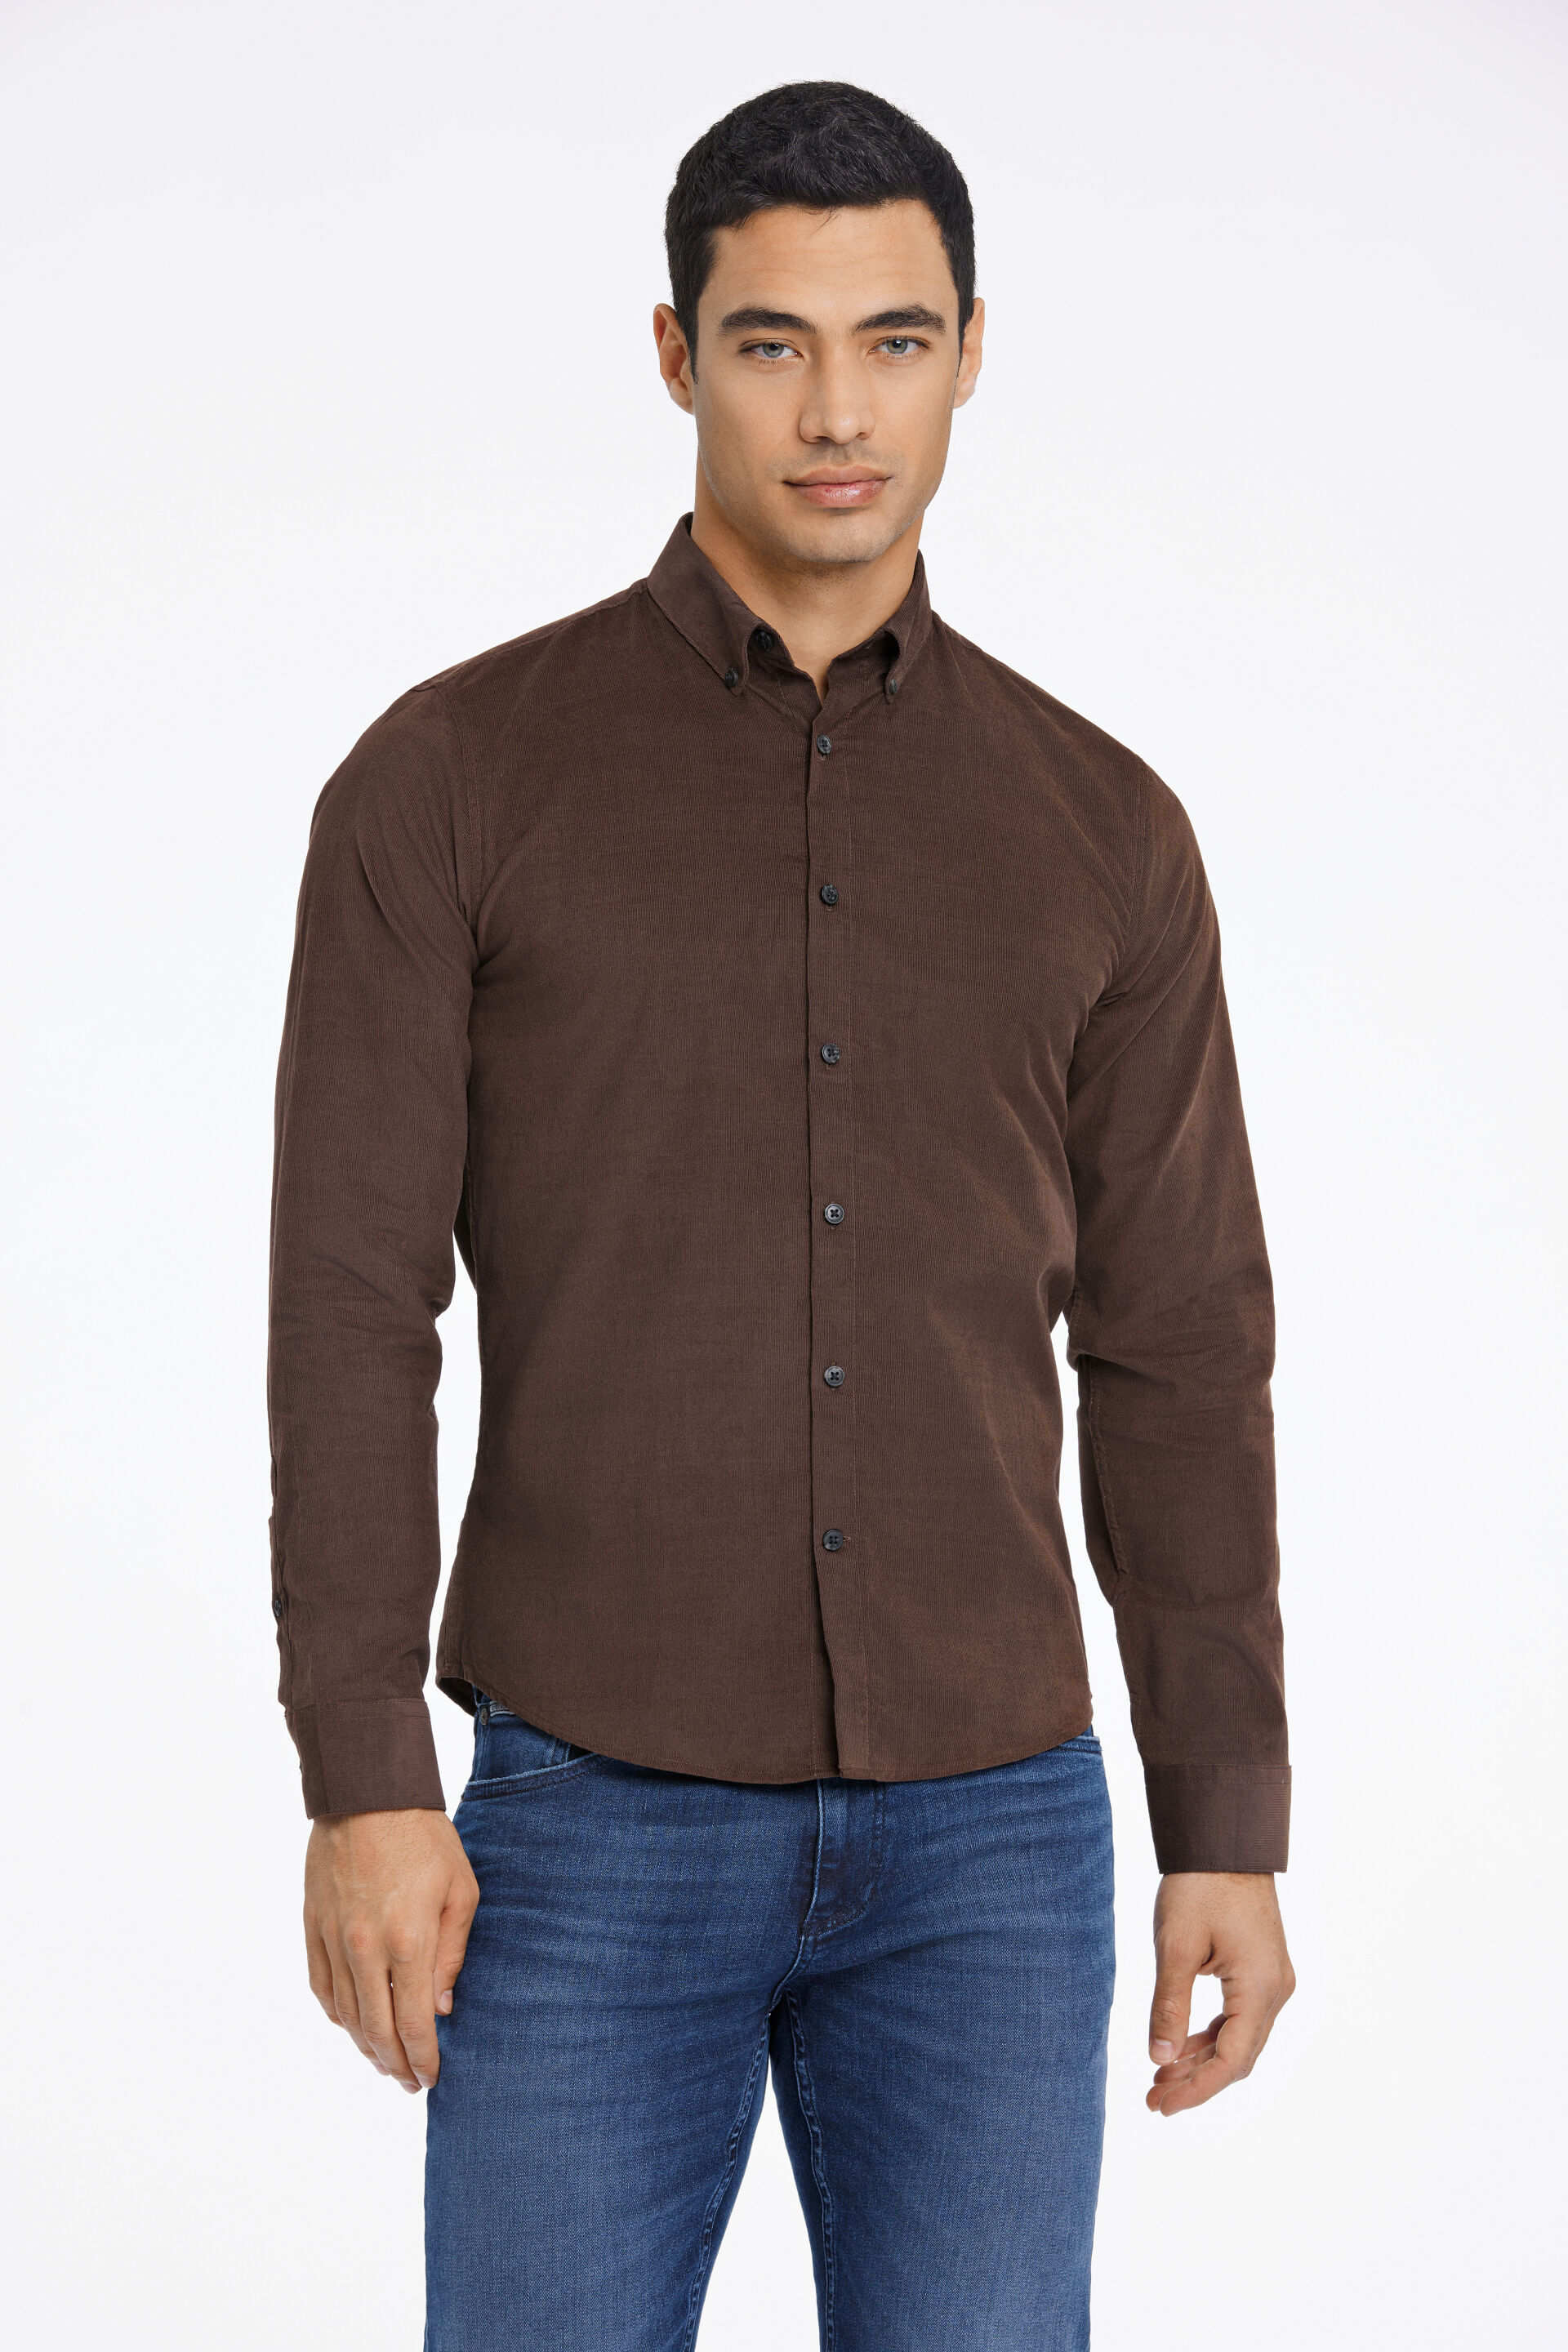 Fløjlsskjorte Fløjlsskjorte Brun 30-203248